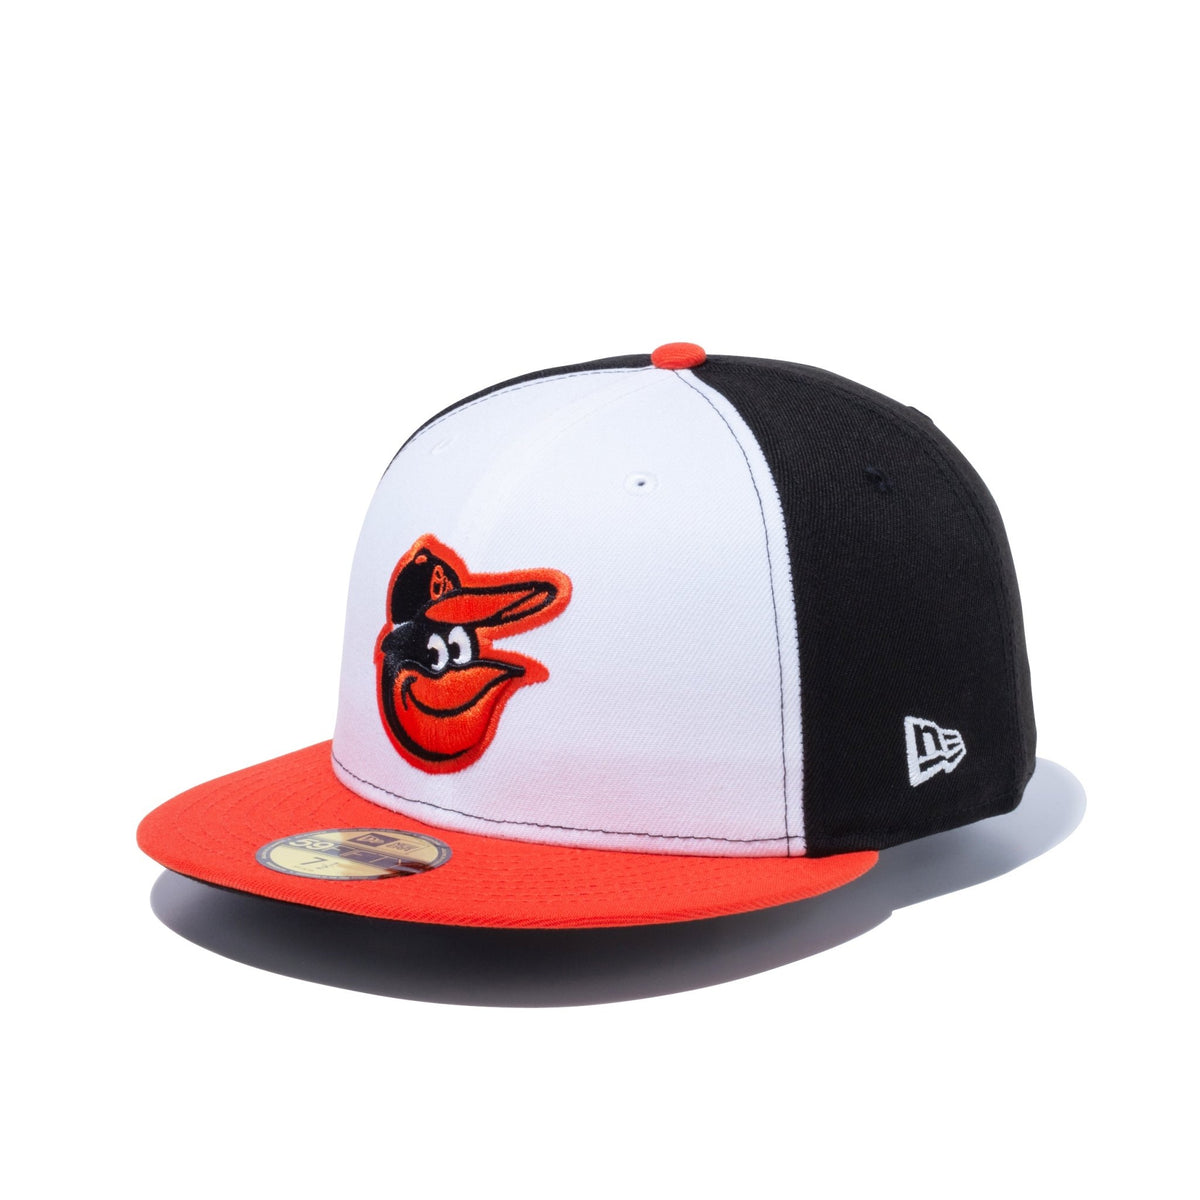 MLB City Connect Hats & Apparel – New Era Cap